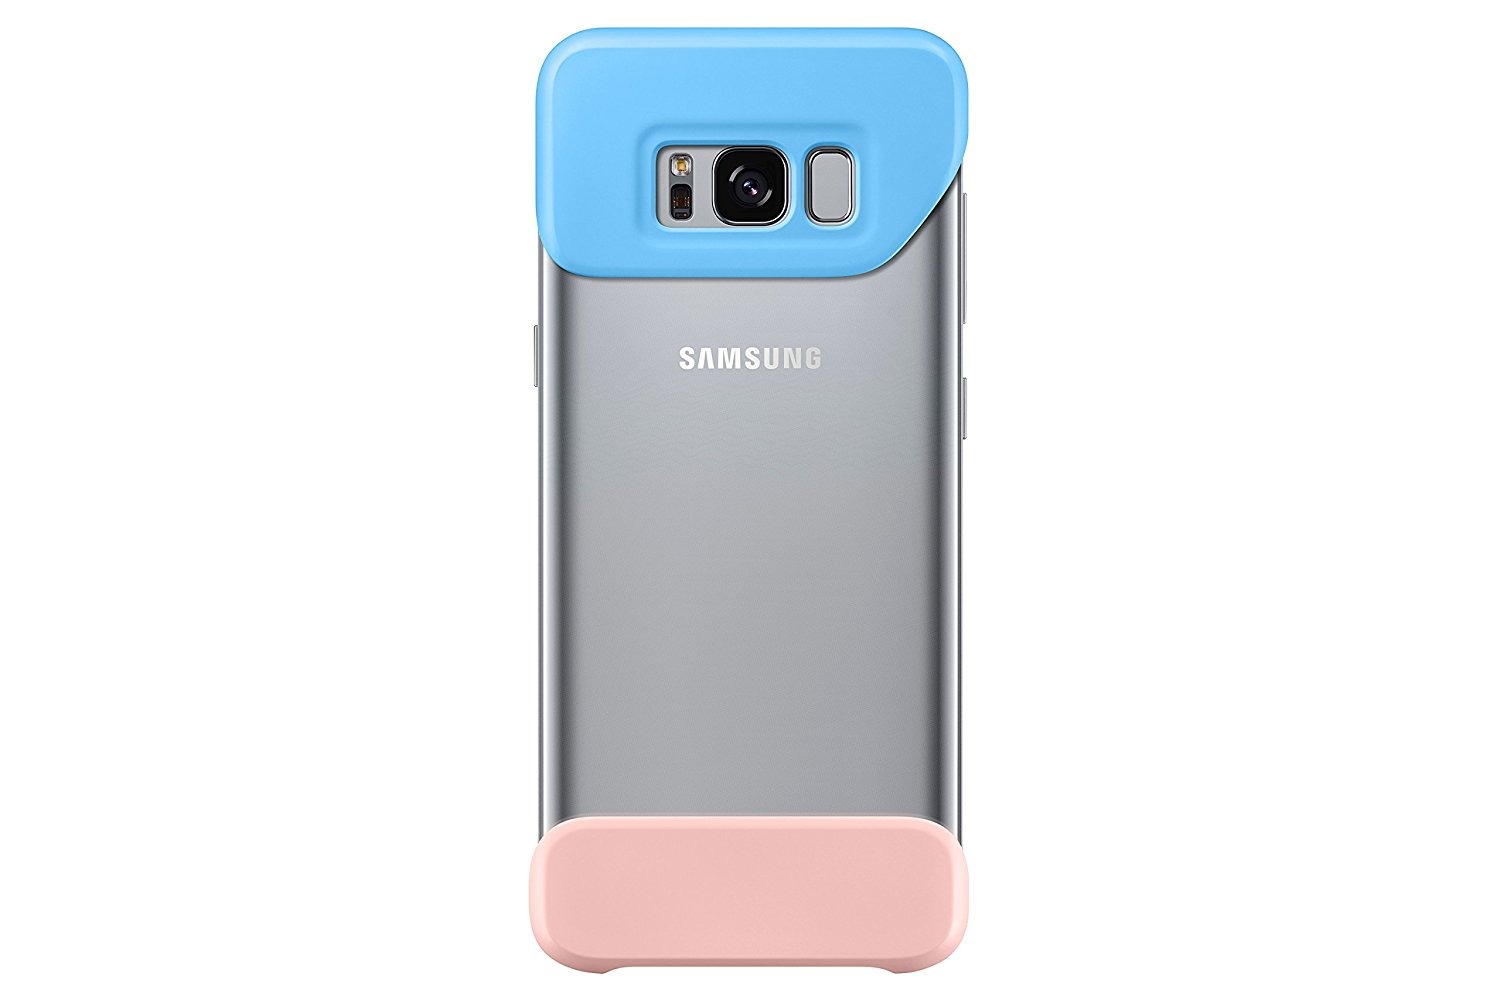 Perceptivo gráfico Oceanía Precio y donde comprar los accesorios del Samsung Galaxy S8